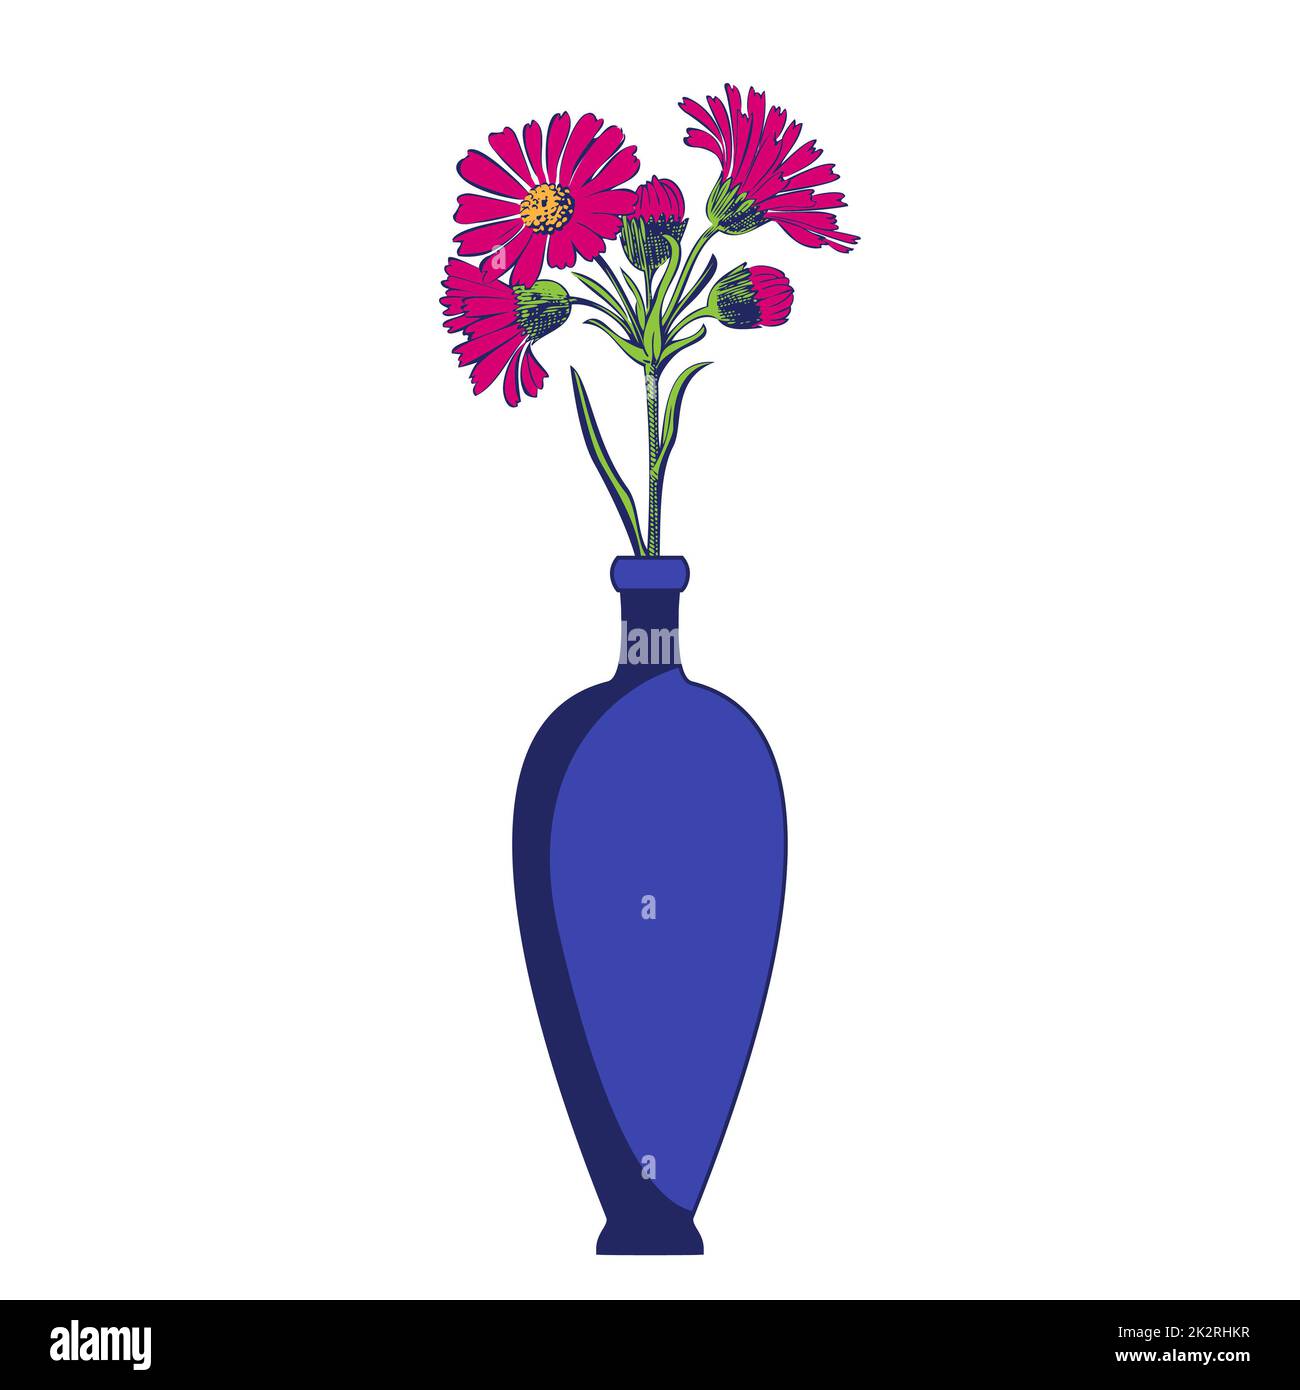 Vasi colorati con fiori in fiore per decorazione e interni. Bouquet di Chrysanthemums rosa in vaso blu isolato su fondo bianco. Illustrazione vettoriale Foto Stock